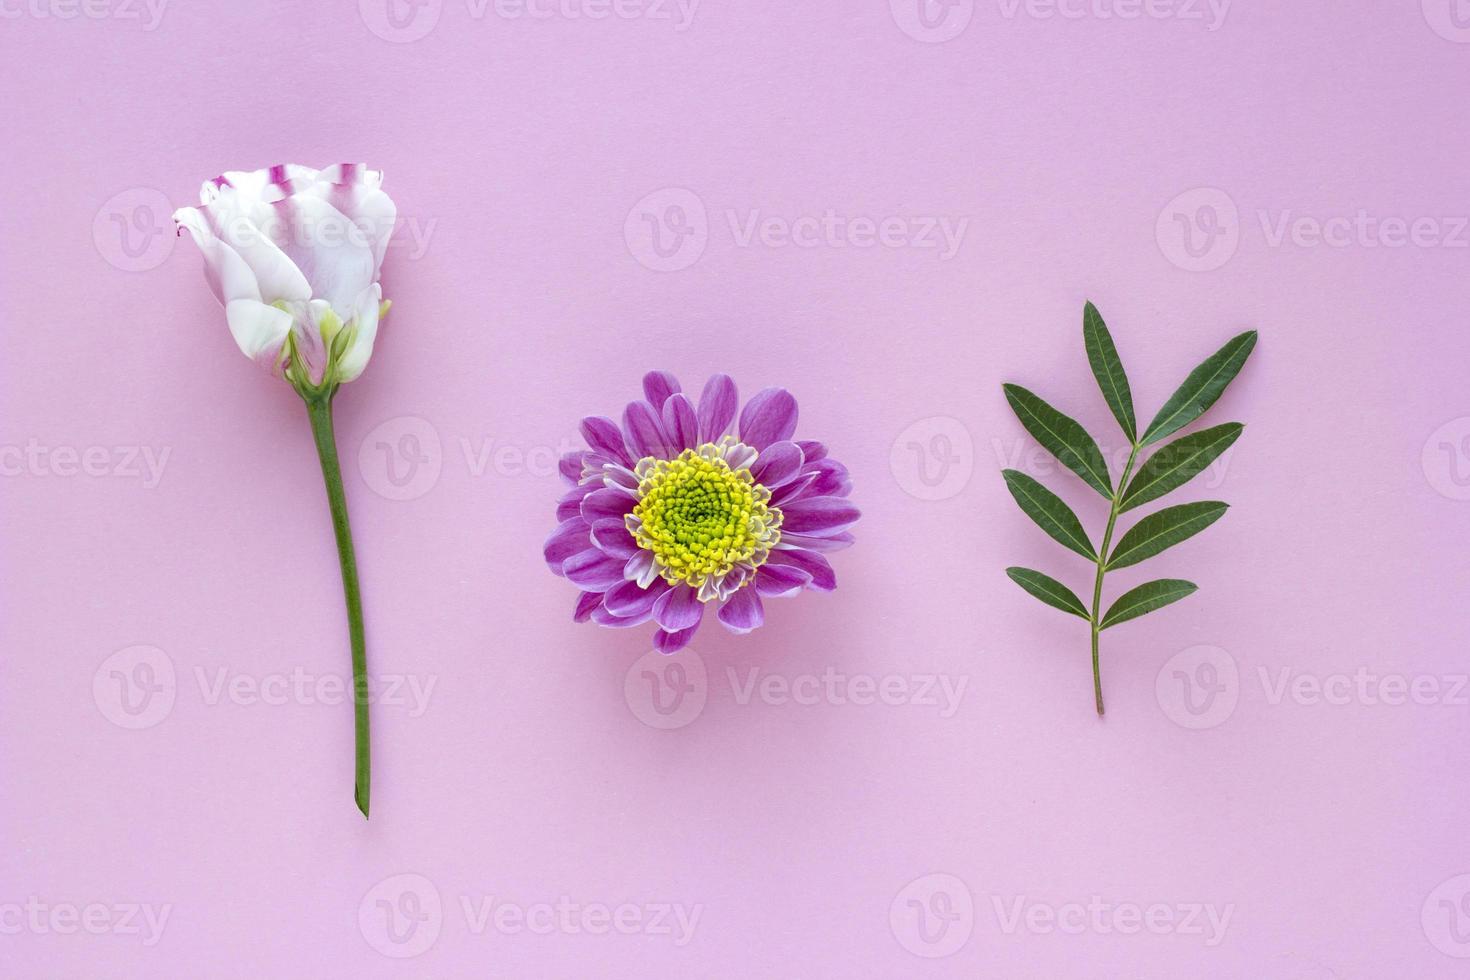 roze-witte bloemen en bladeren op roze pastel achtergrond. valentijnsdag, moederdag, verjaardag, lenteconcept. minimalistische bloemenachtergrond in platliggende stijl, bovenaanzicht foto